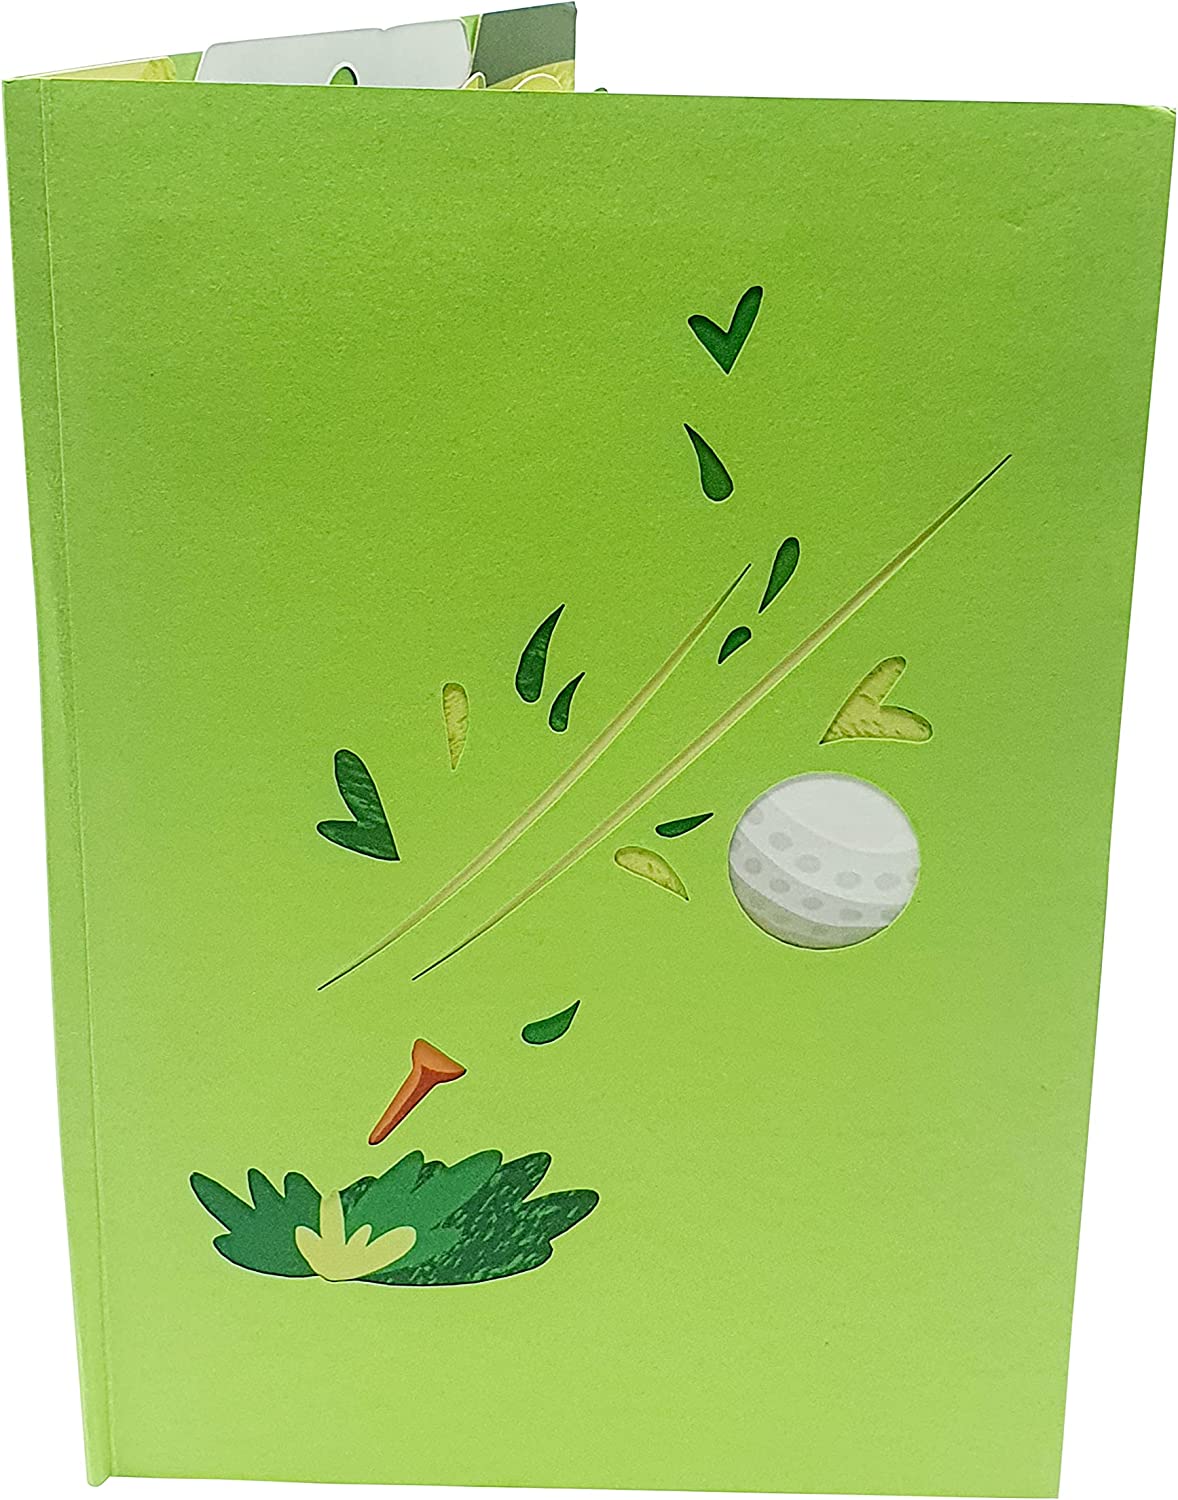 Golf Ball Pop Up Card